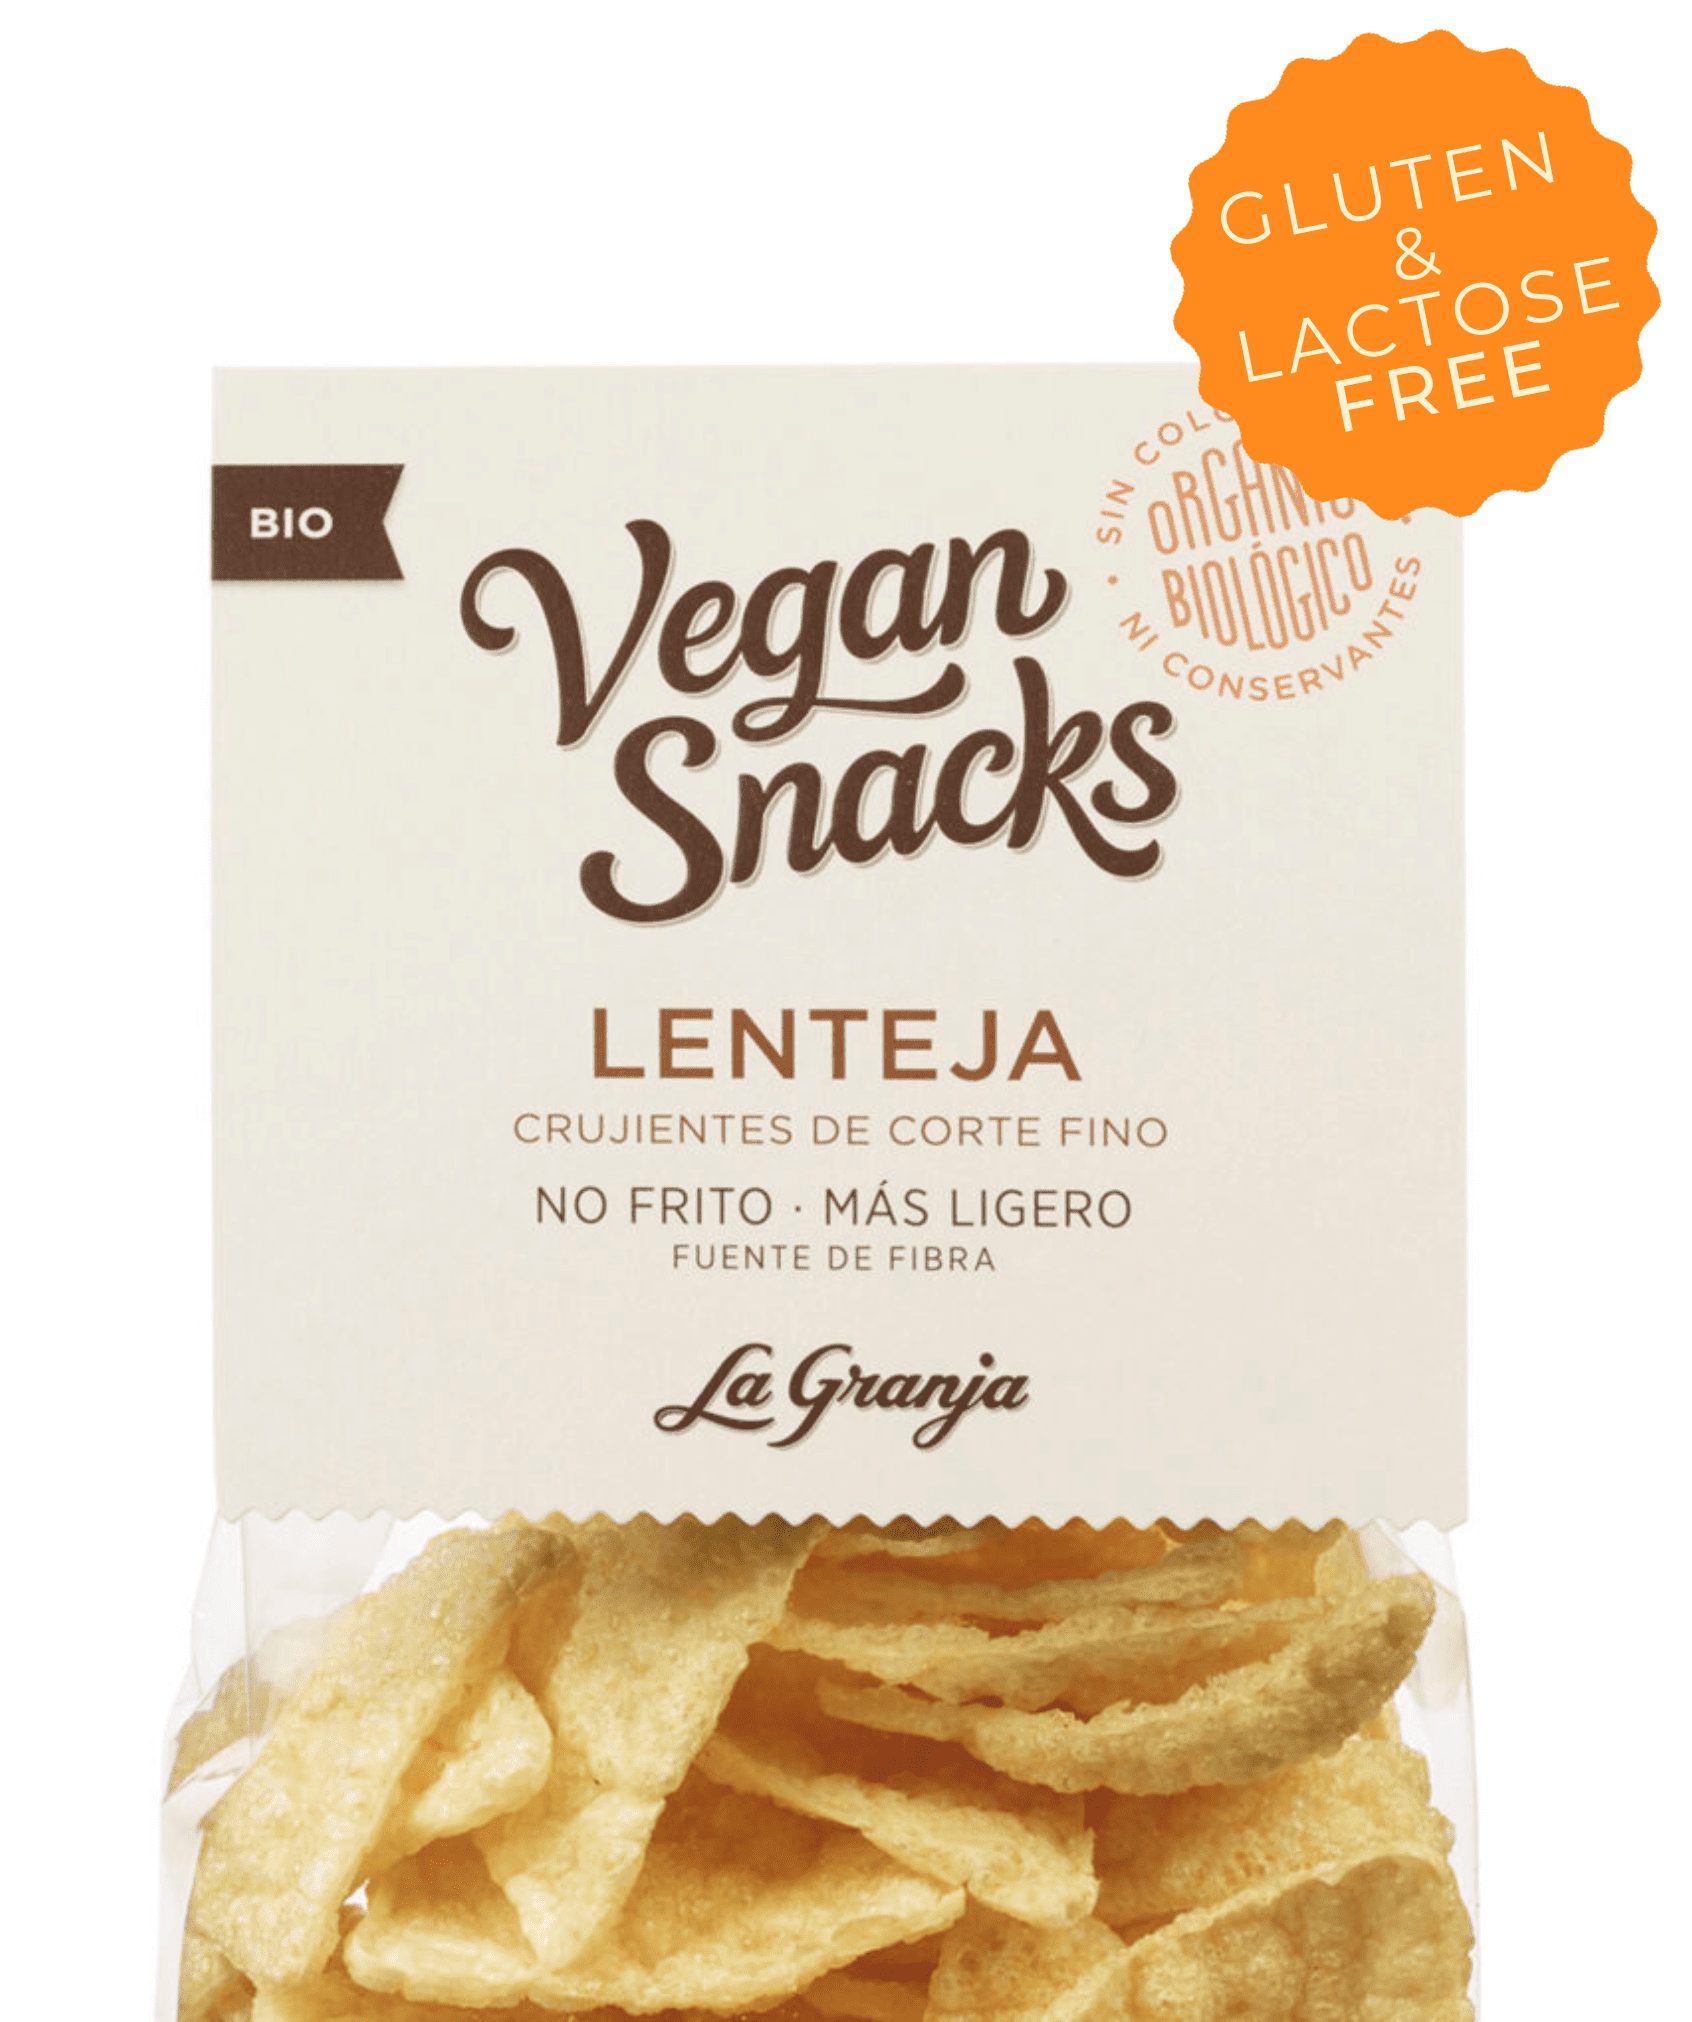 Vegan snacks llentia